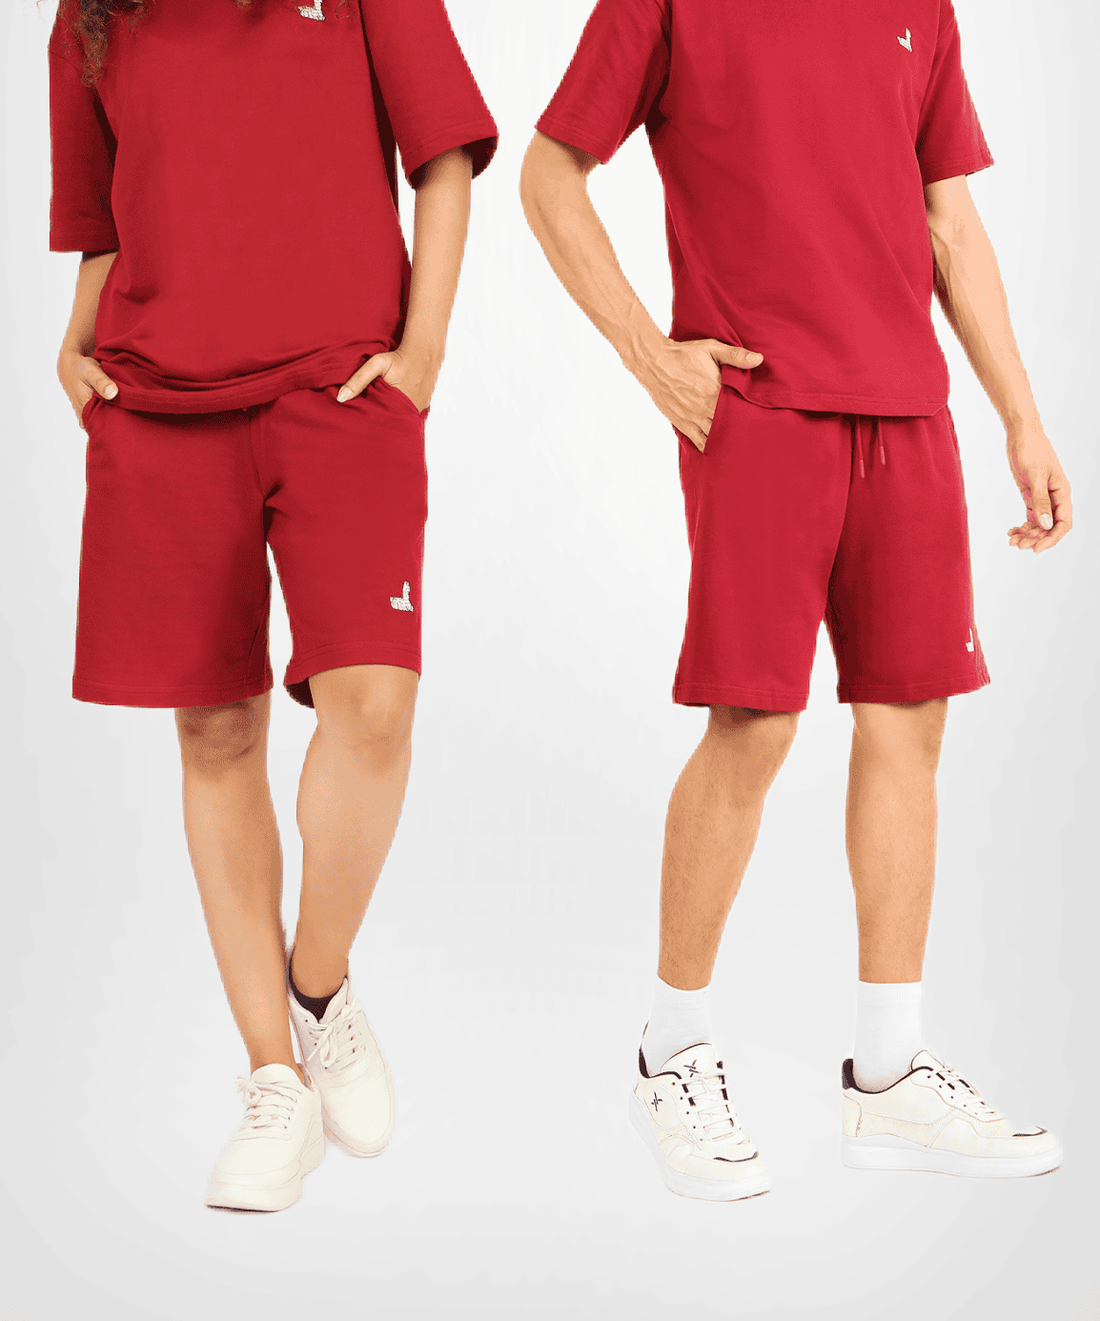 Red Hot Unisex Shorts